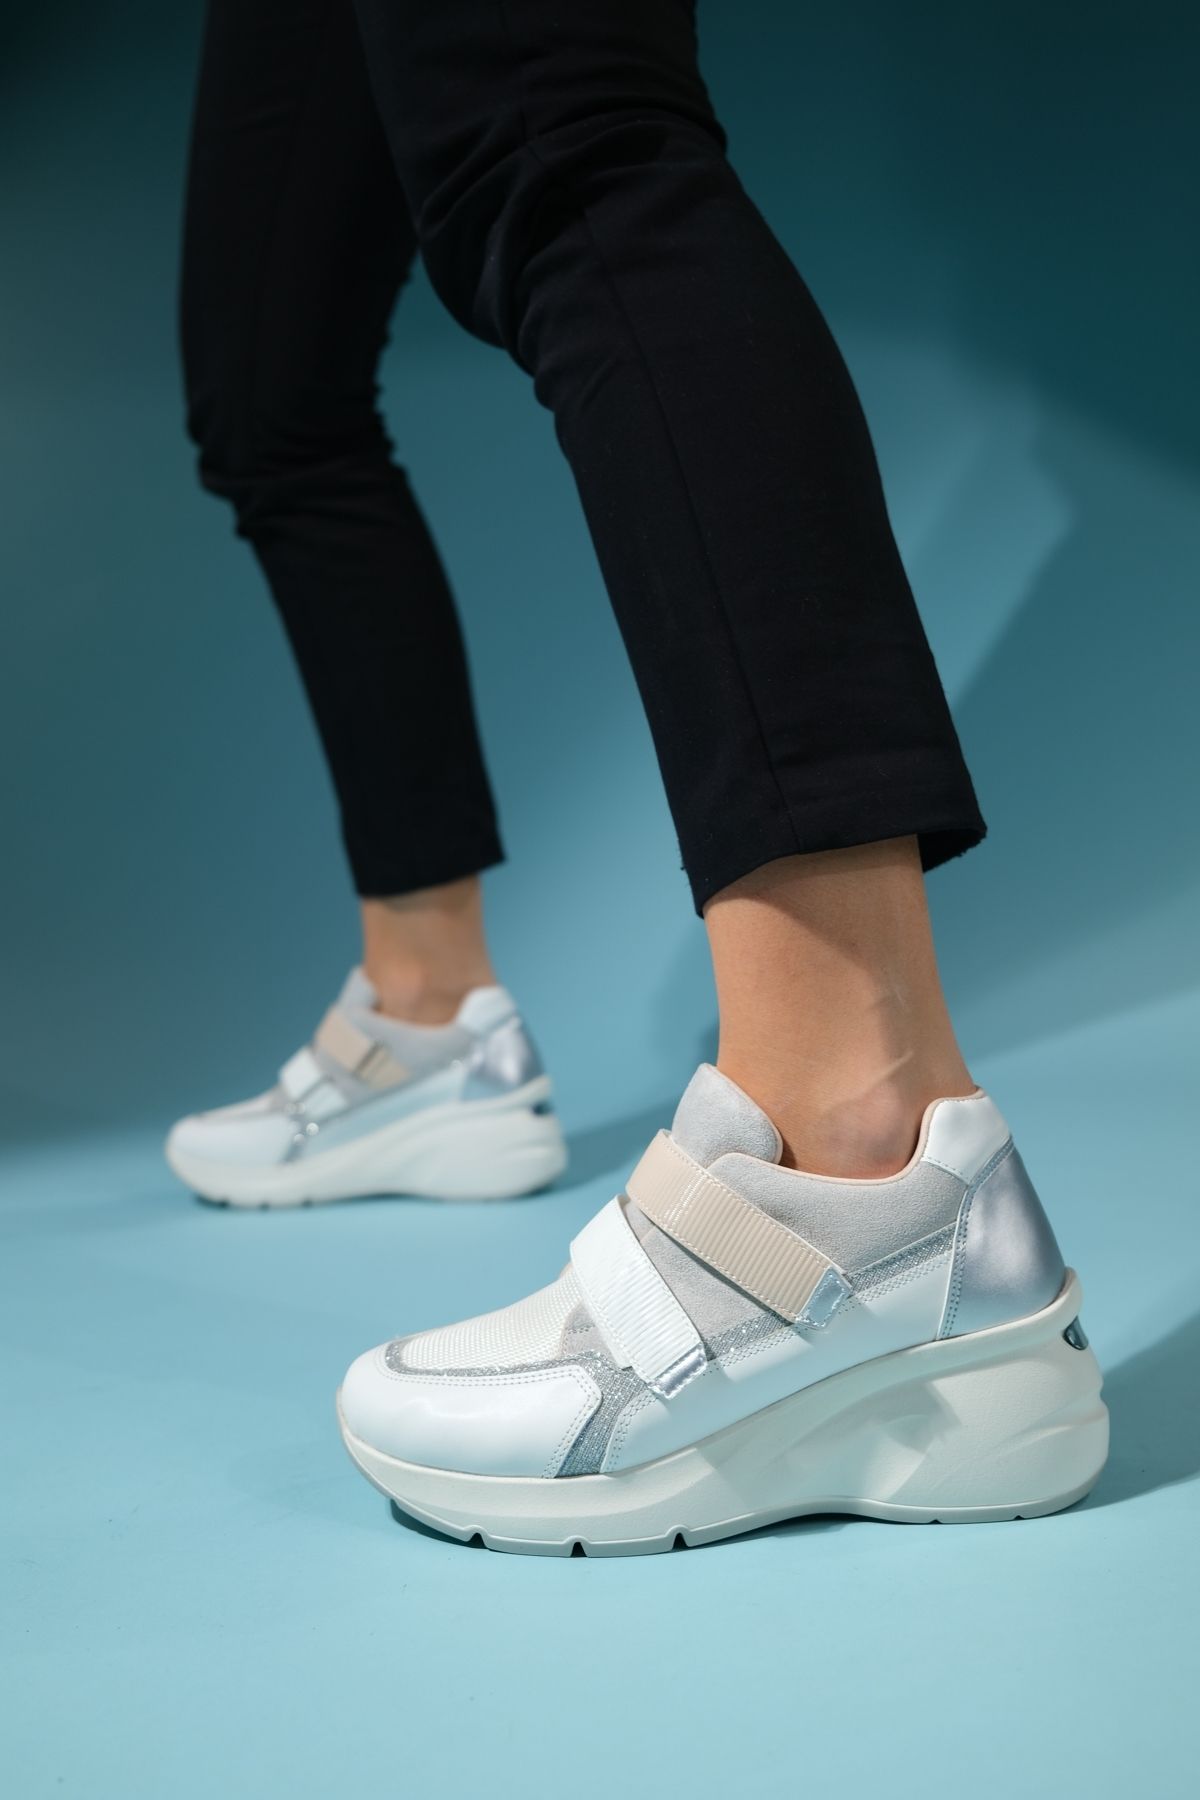 luvishoes BERGE Beyaz Bej Kadın Cırtlı Dolgu Taban Spor Sneakers